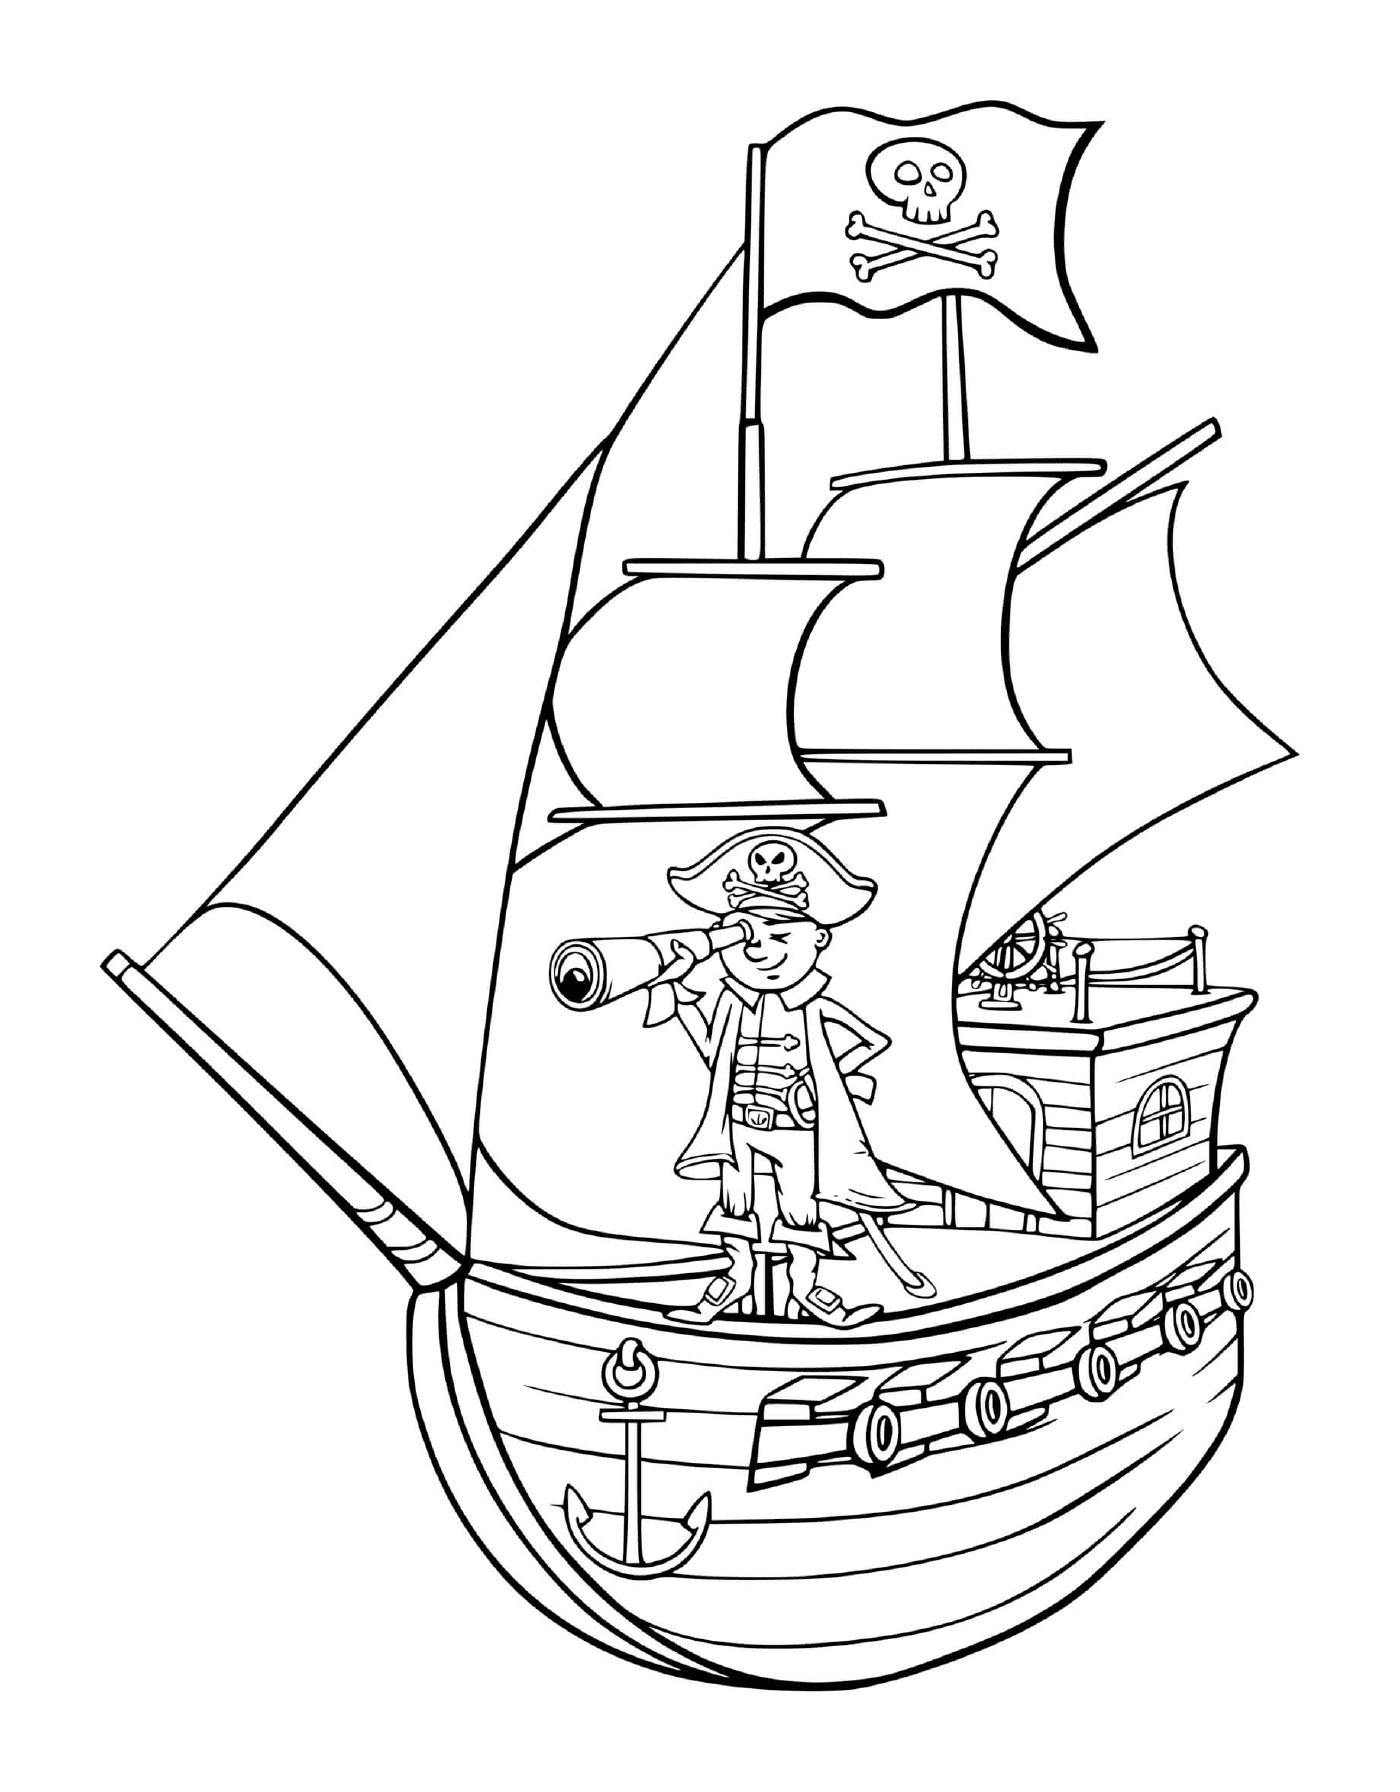   Un pirate sur un bateau 